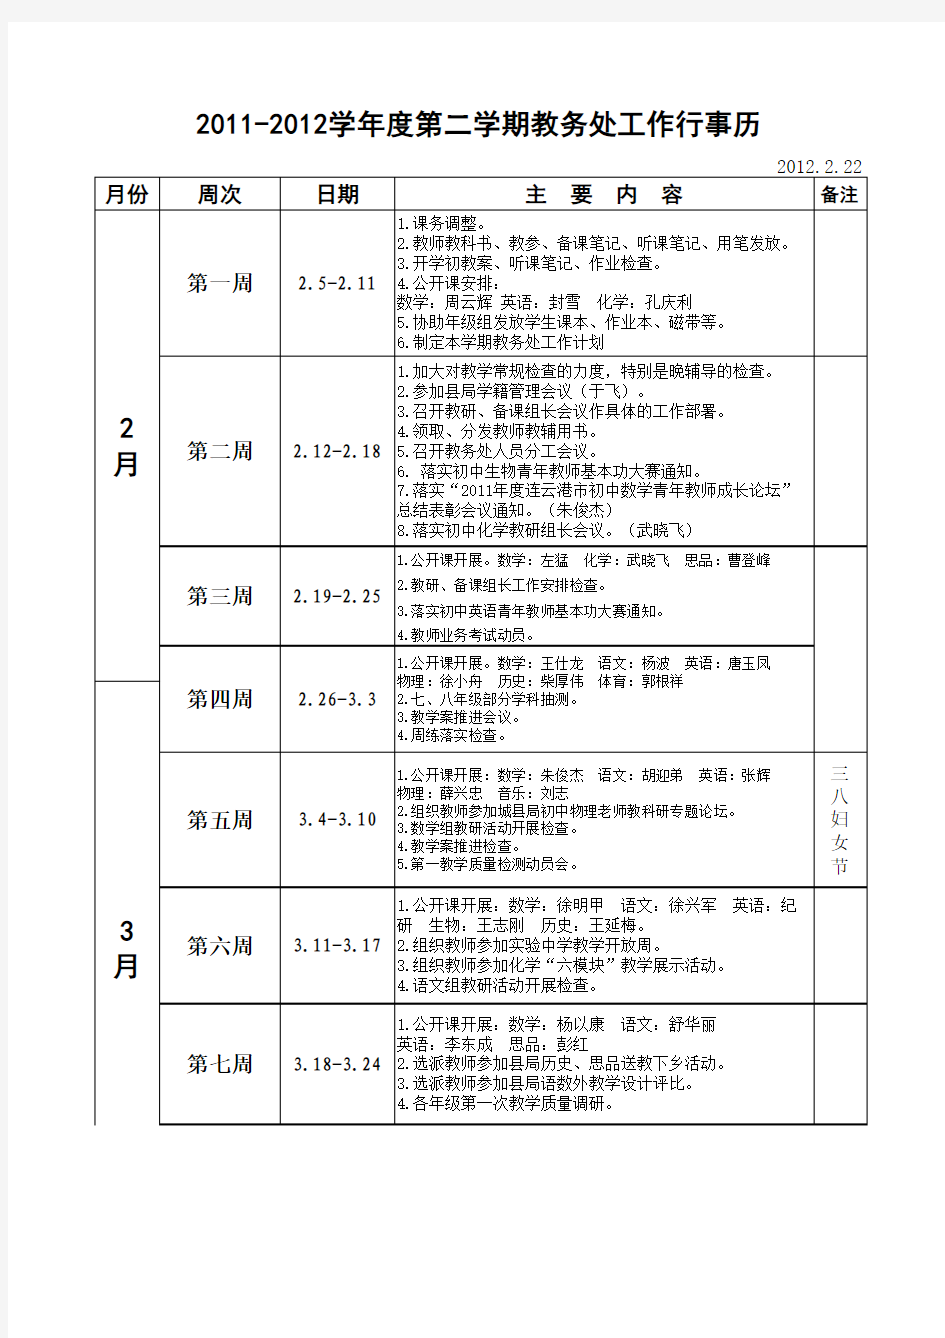 灌云县小伊中学2011-2012学年度第二学期教务处工作行事历